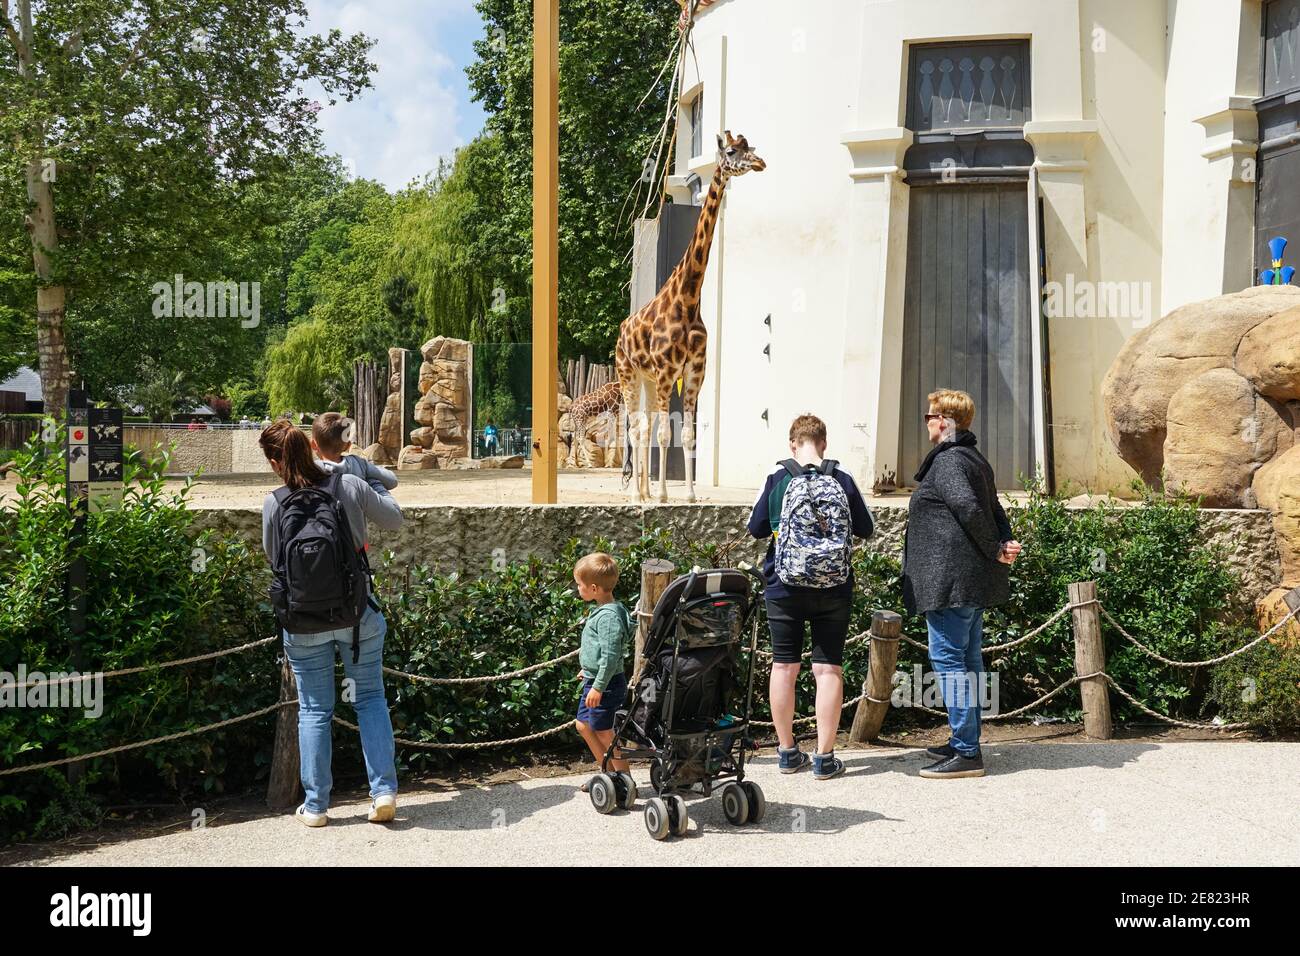 Visiteurs regardant les girafes au zoo d'Anvers, zoo d'Anvers, Belgique Banque D'Images